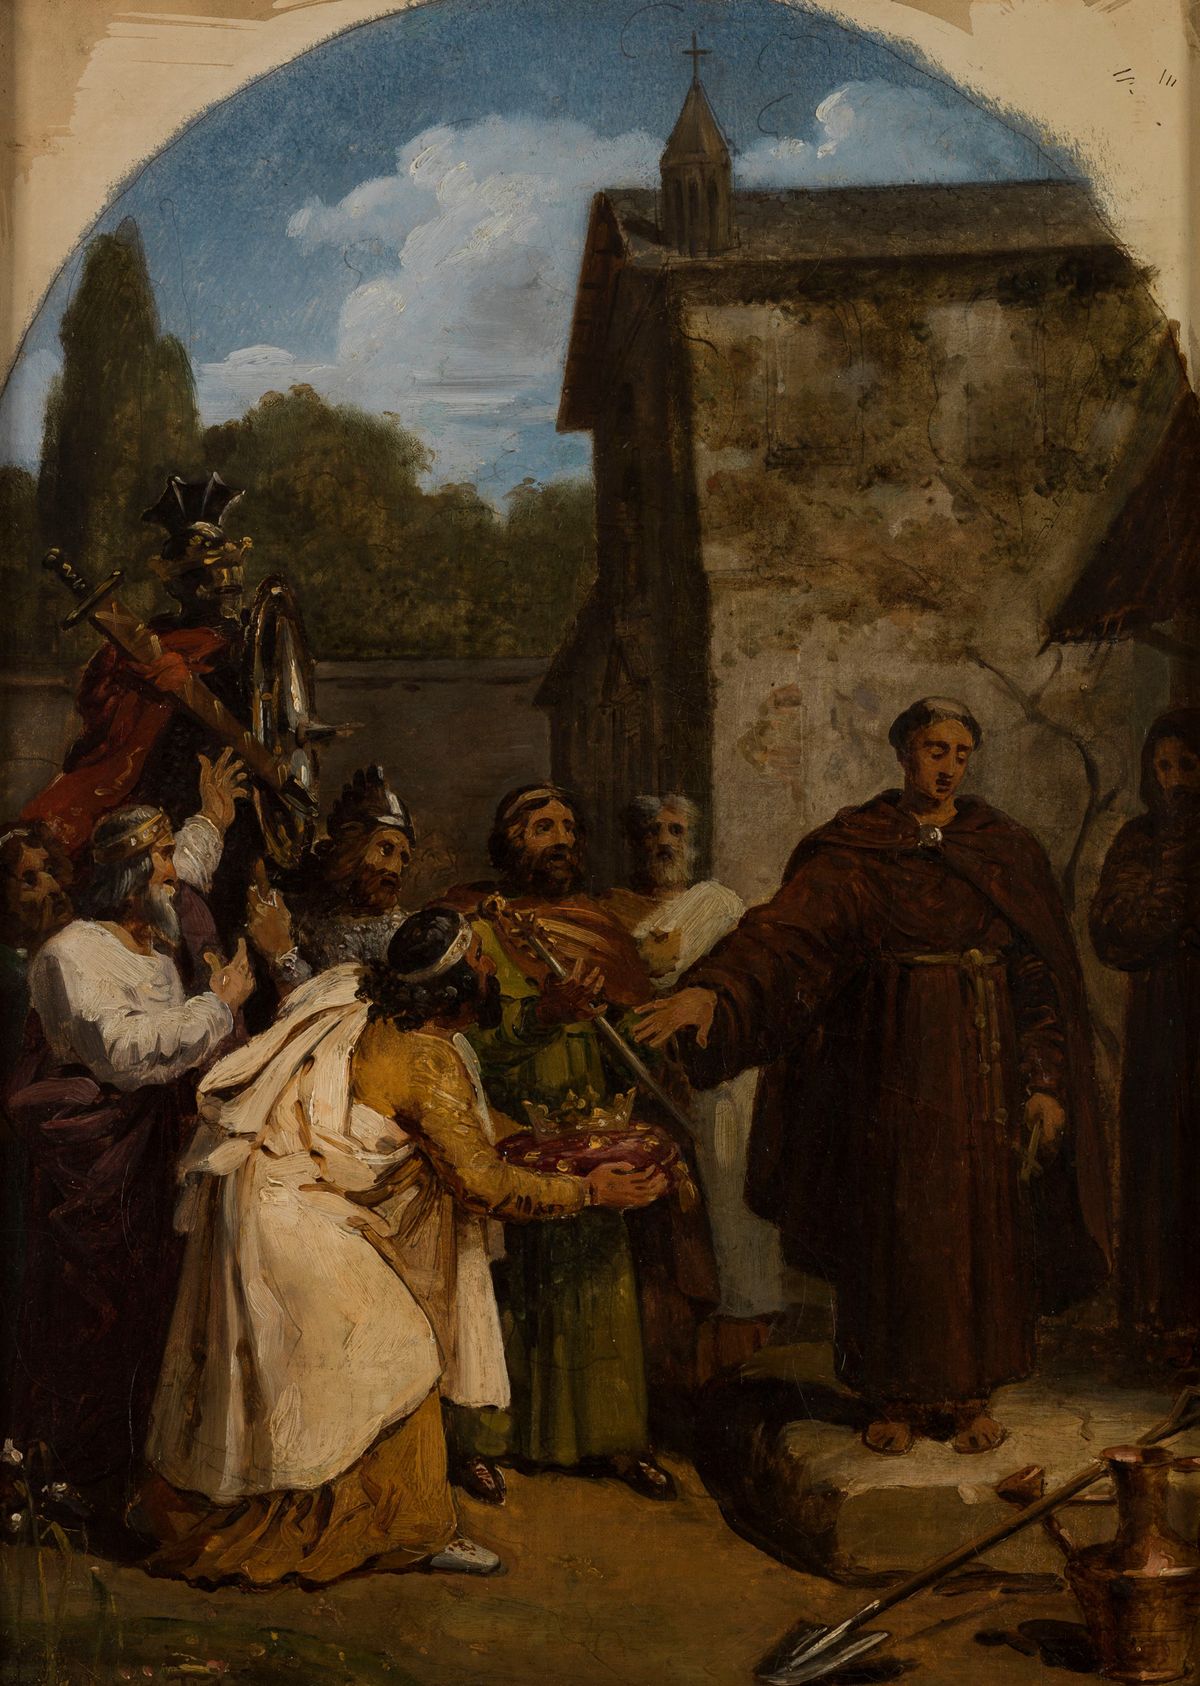 Saint Fiacre refusing the crown of Scotland (1818) by François-Louis Dejuinne - Public Domain Catholic Painting